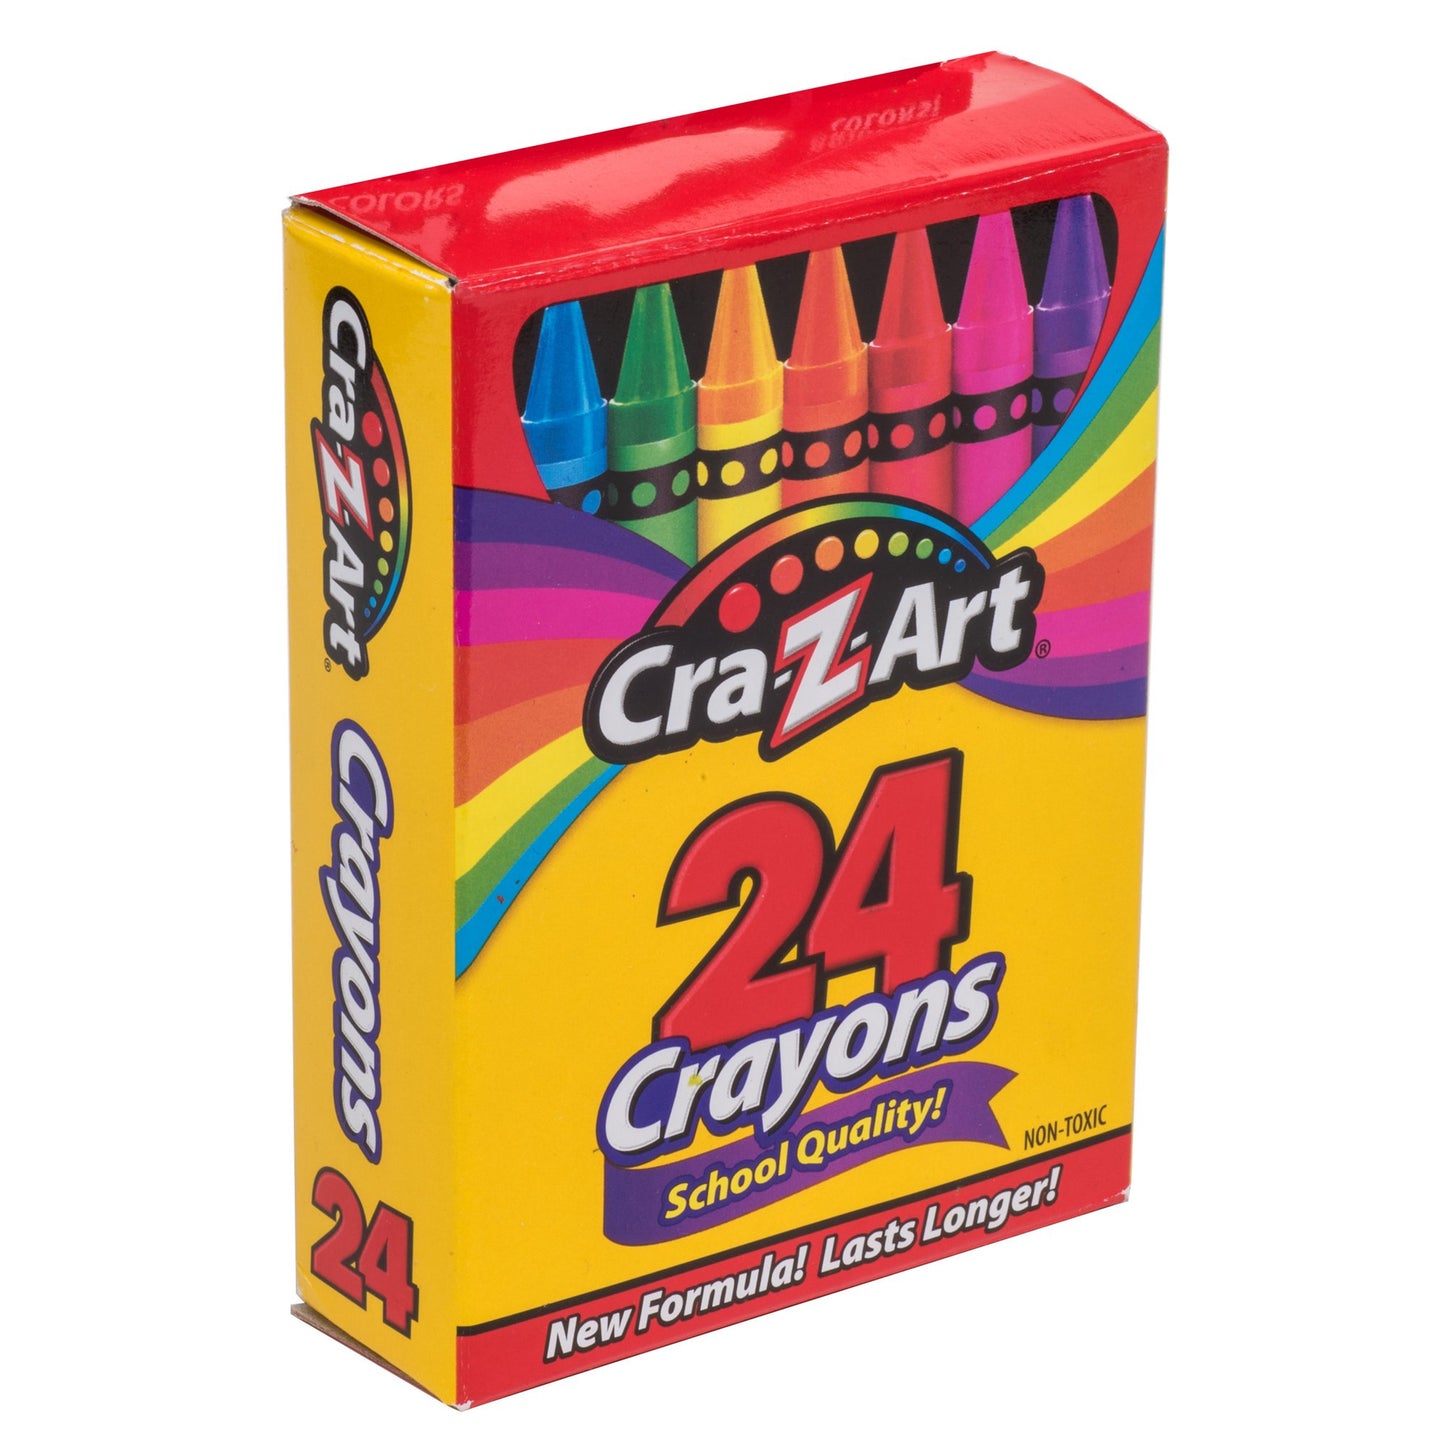 Los crayones de calidad escolar de Cra-Z-Art, 24 unidades, vienen en 24 colores diferentes para un arcoíris infinito de creatividad: ¡colores primarios y secundarios incluidos! ¡Los crayones son lisos y brillantes! Los crayones vienen afilados y listos para usar. Los crayones son de calidad escolar y tienen certificación AP no tóxicos.